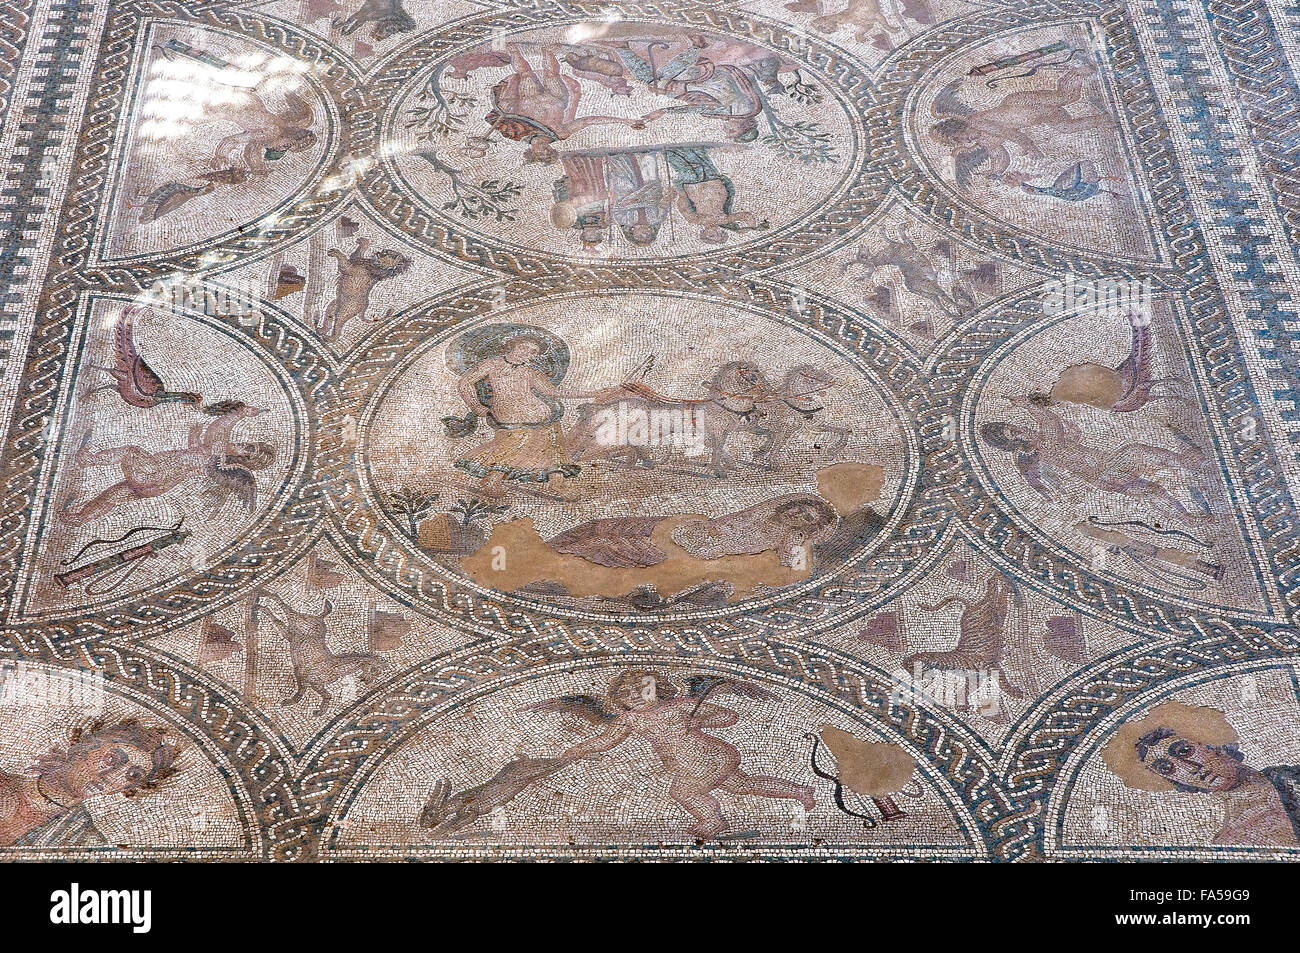 Romano città iberica di Castulo, Mosaico dell'AMA - Dettaglio, Linares, Jaen provincia, regione dell'Andalusia, Spagna, Europa Foto Stock